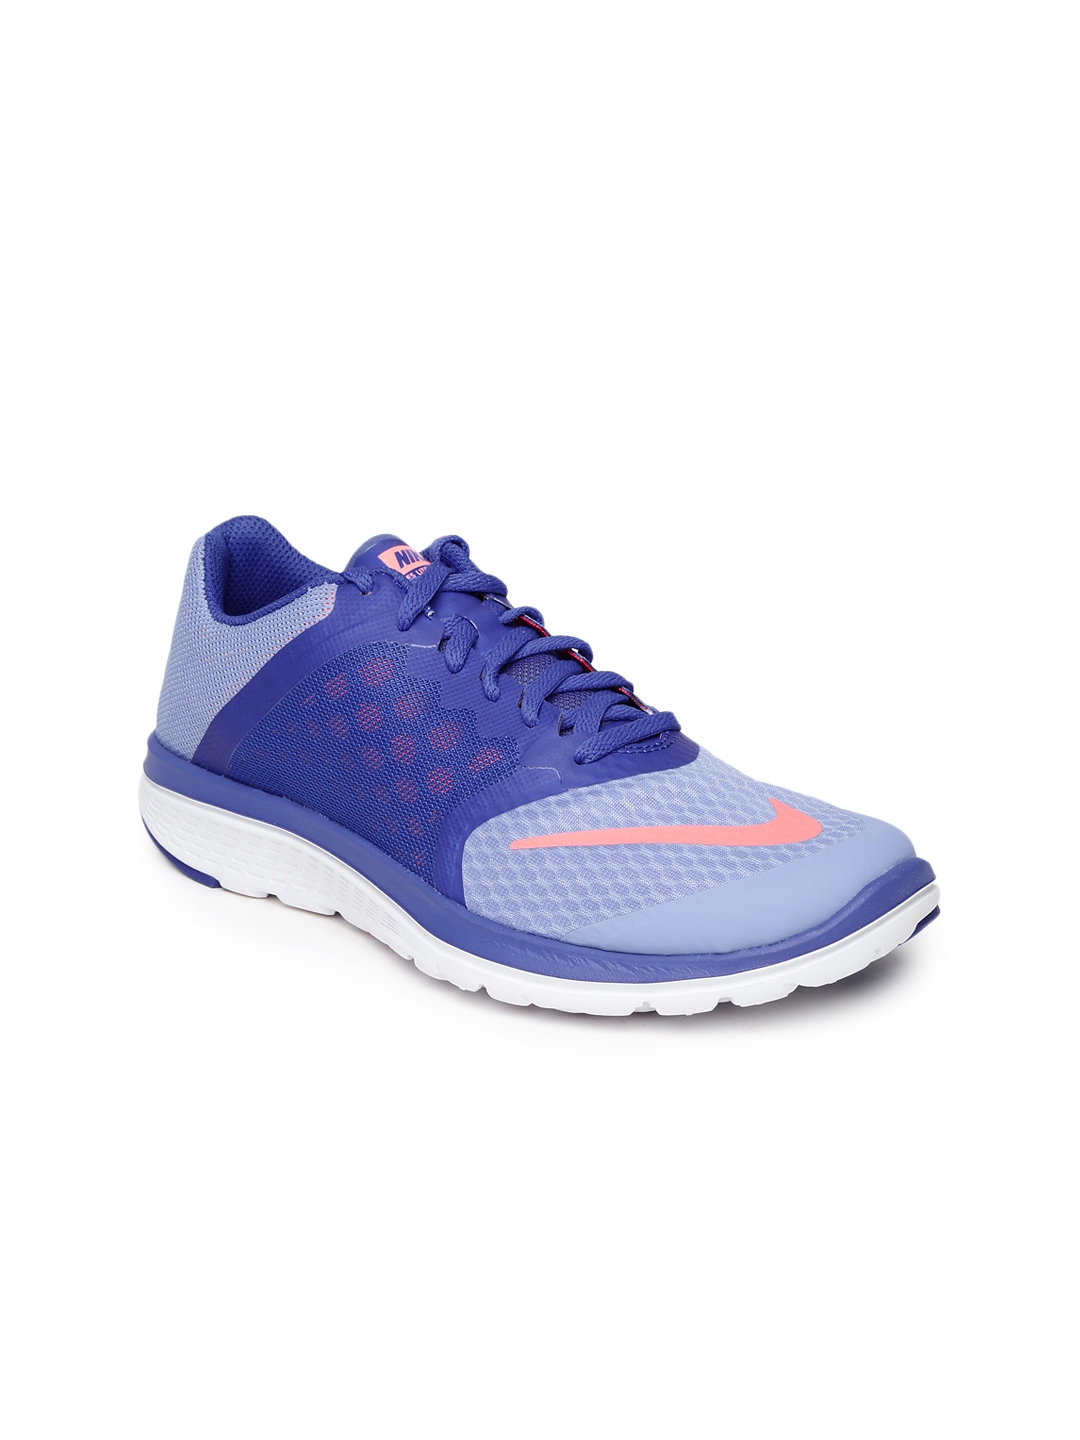 Buy Nike Women Blue FS Lite Run 3 Running Shoes - for Women 1109947 | Myntra